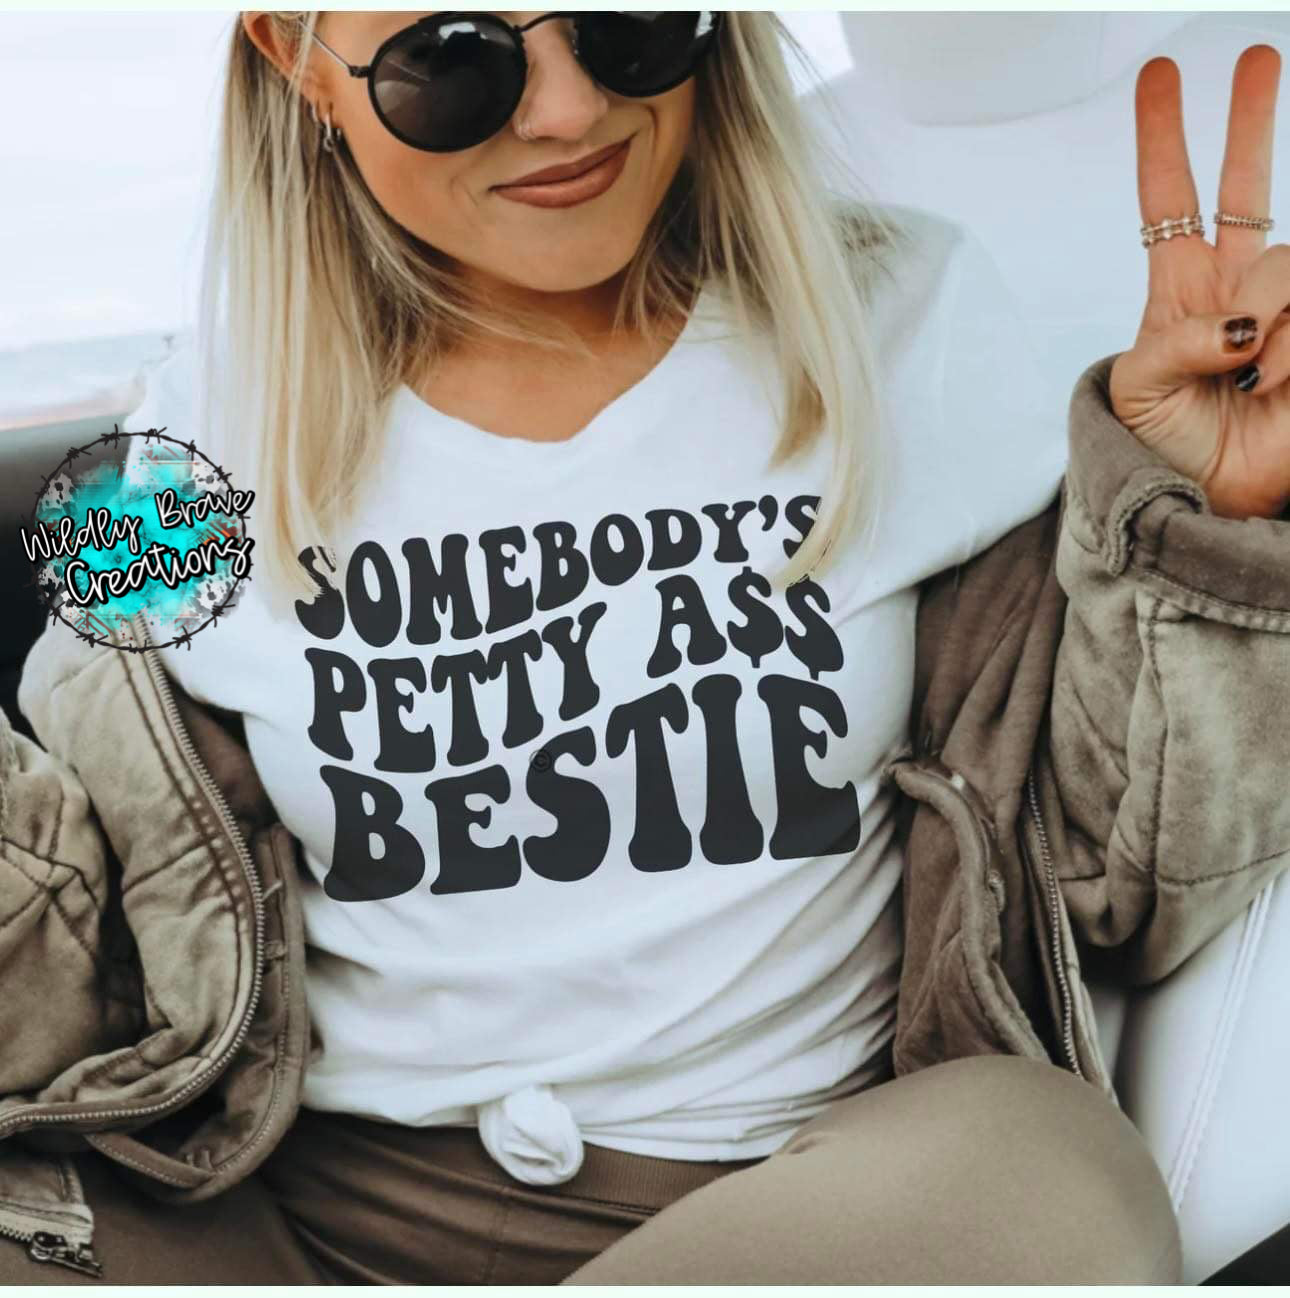 Somebody’s Petty A$$ Bestie